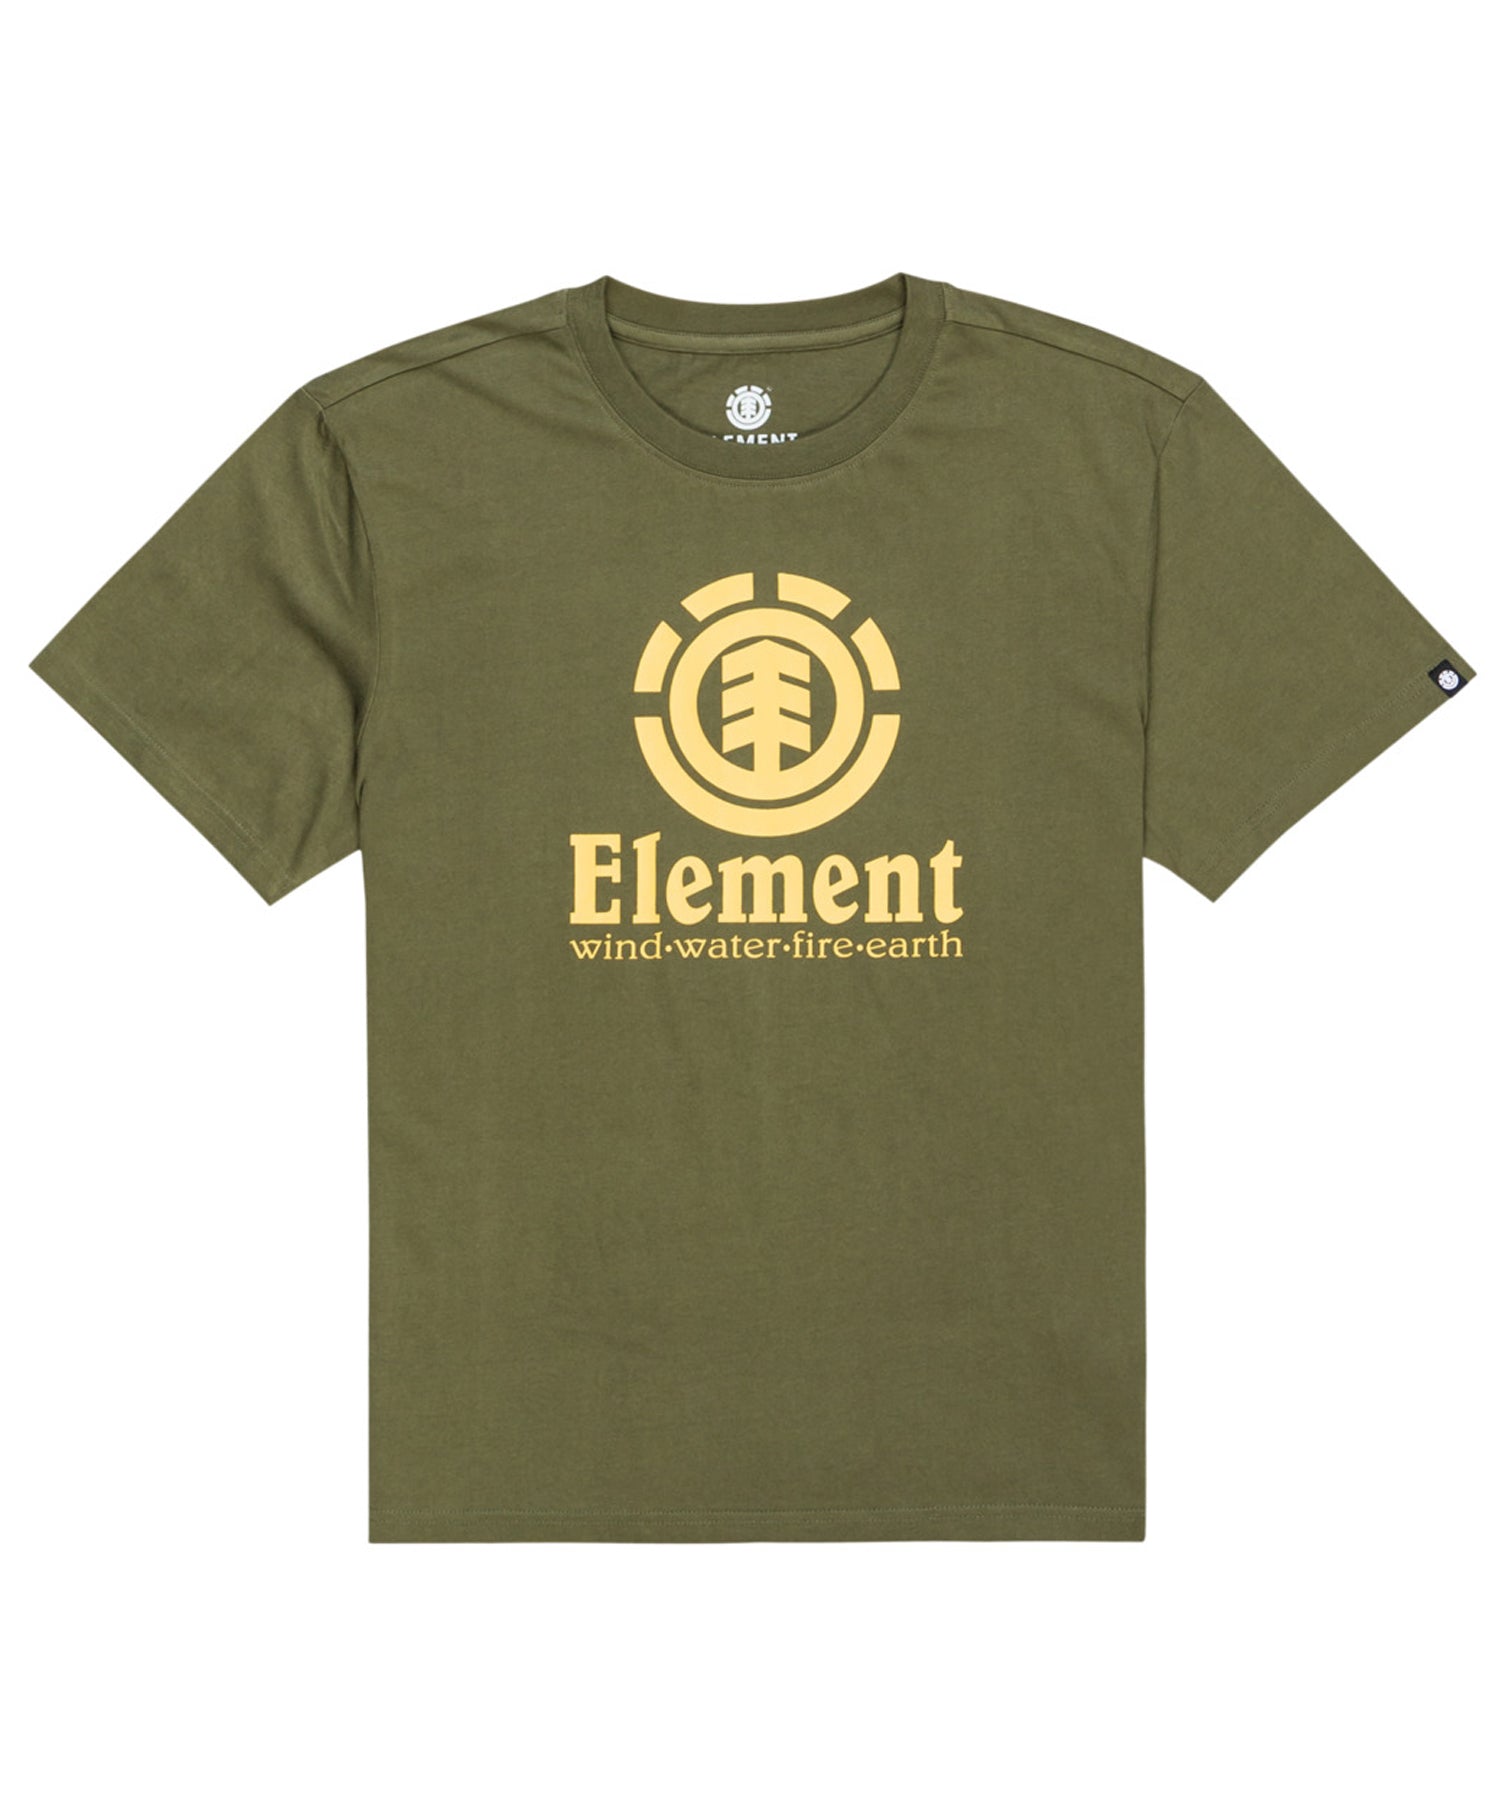 element vertical-army seal white-sudadera-niños/as-color verde militar-algodón orgánico-160 grms-logo grande element en el pecho.